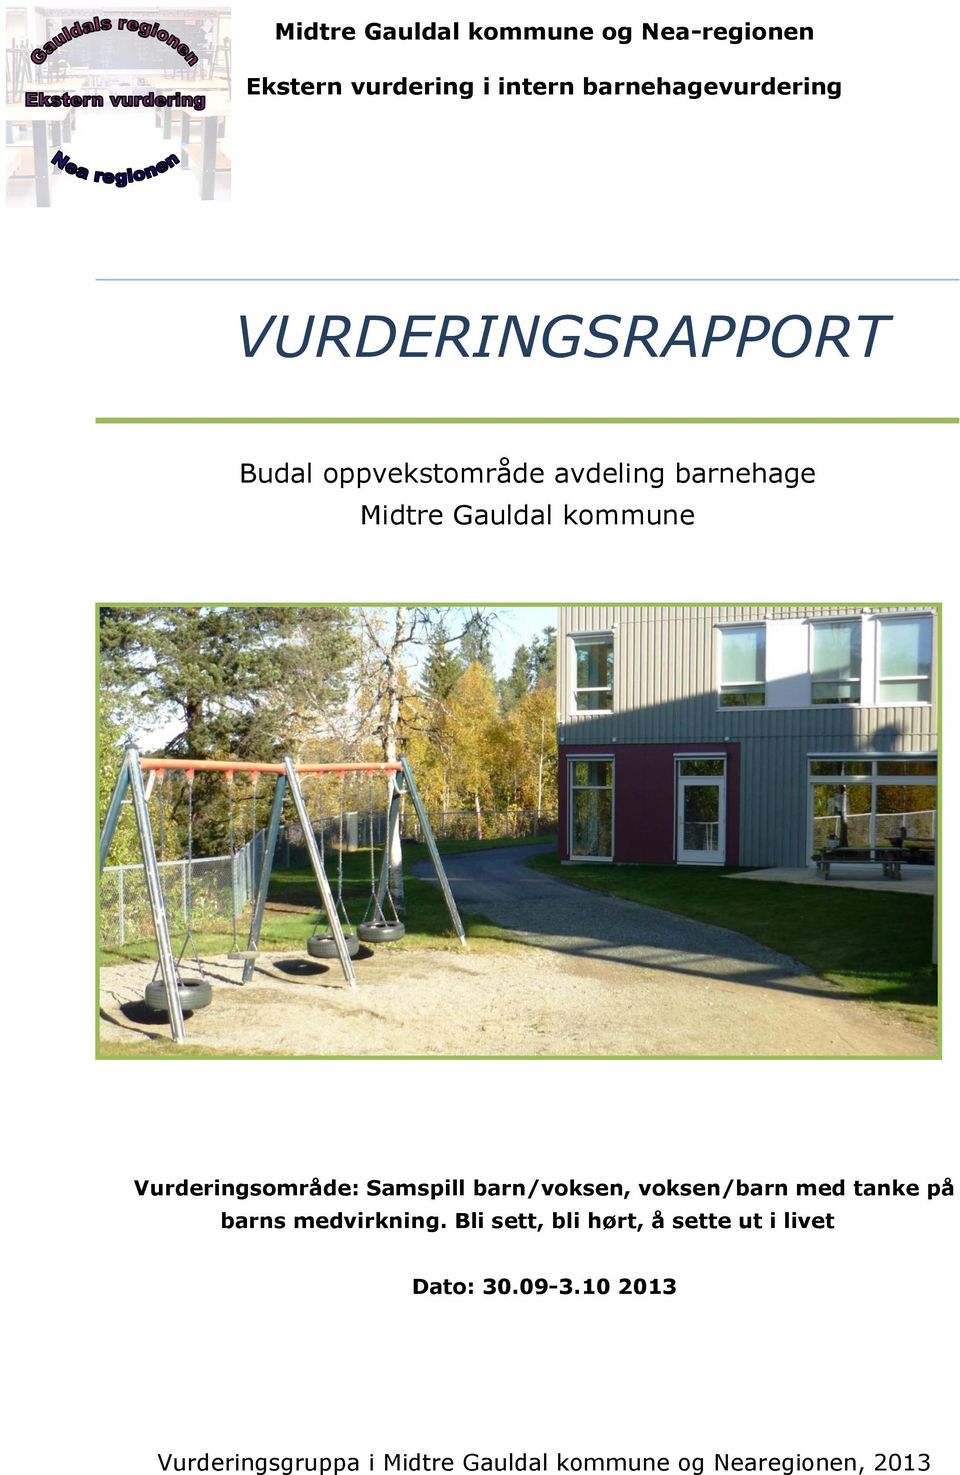 Midtre Gauldal kommune Vurderingsområde: Samspill barn/voksen, voksen/barn